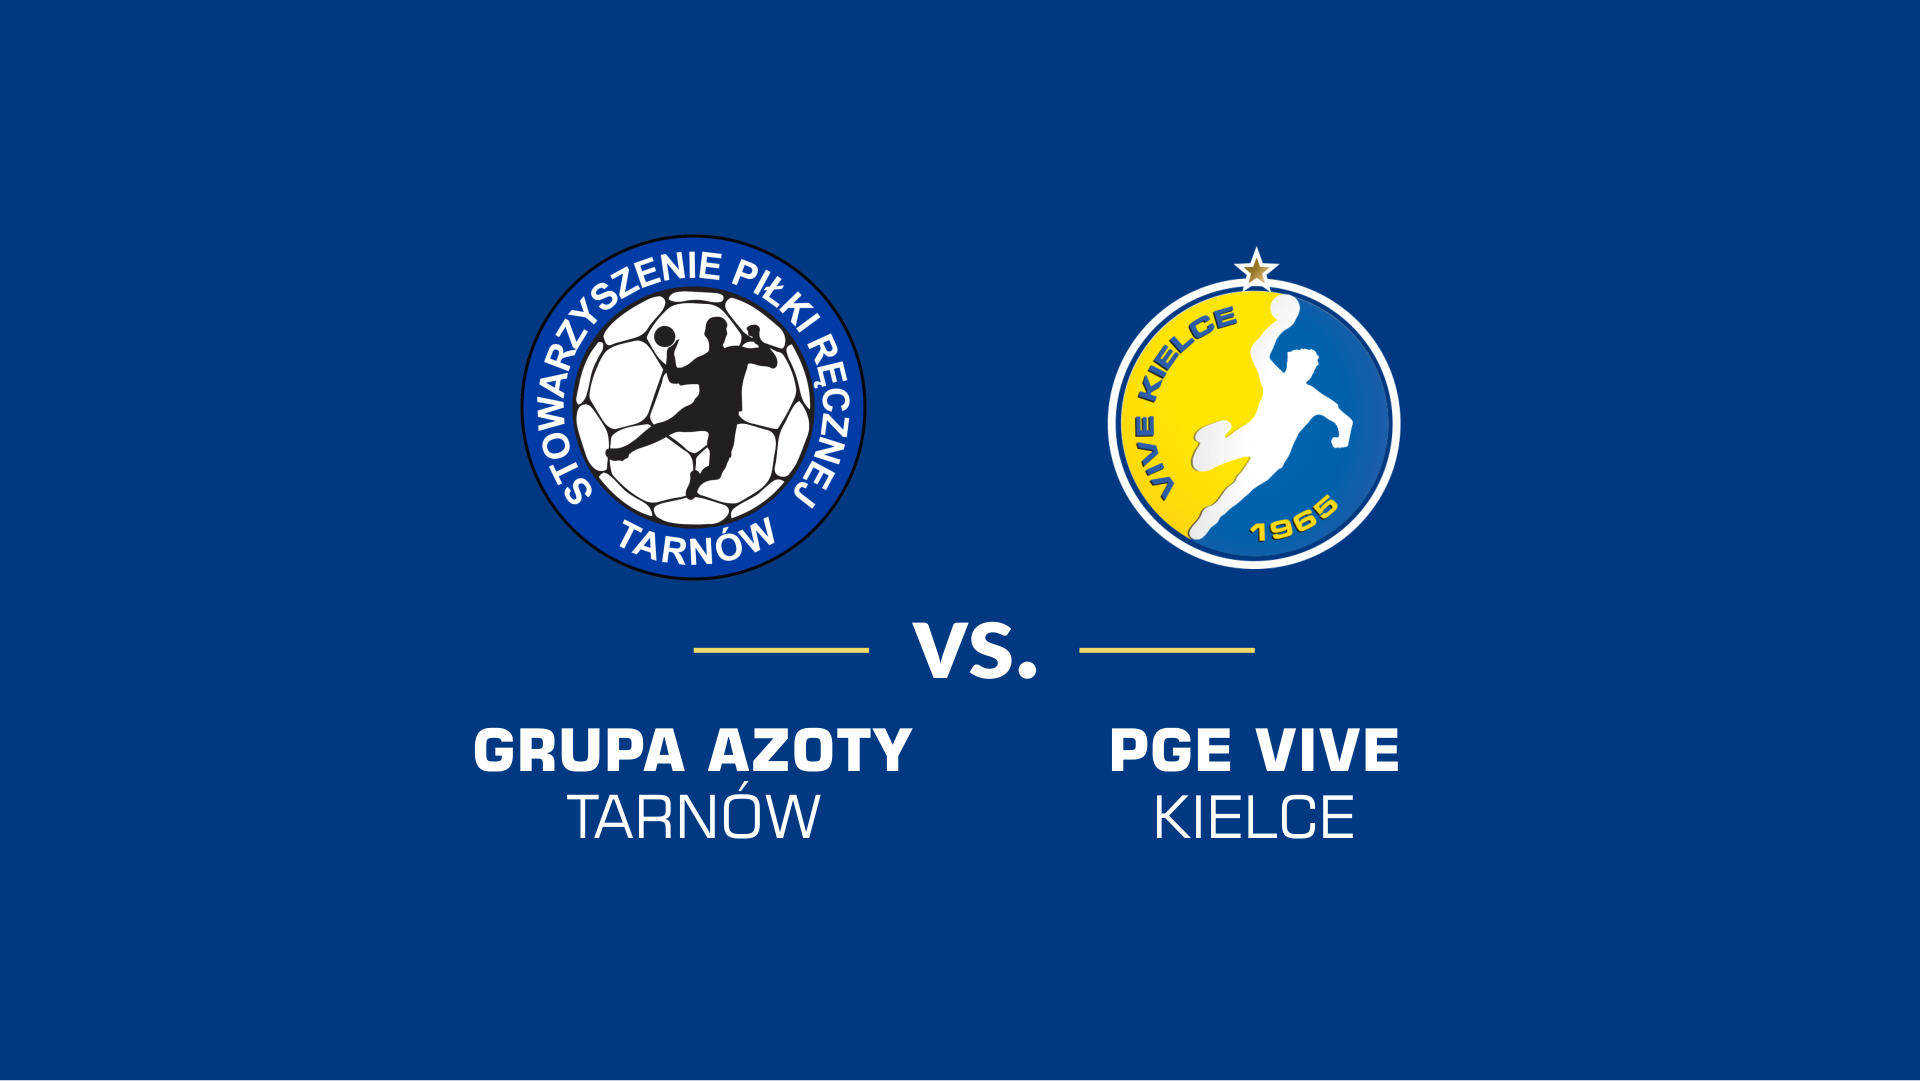 baner promujący mecz z PGE VIVE Kielce